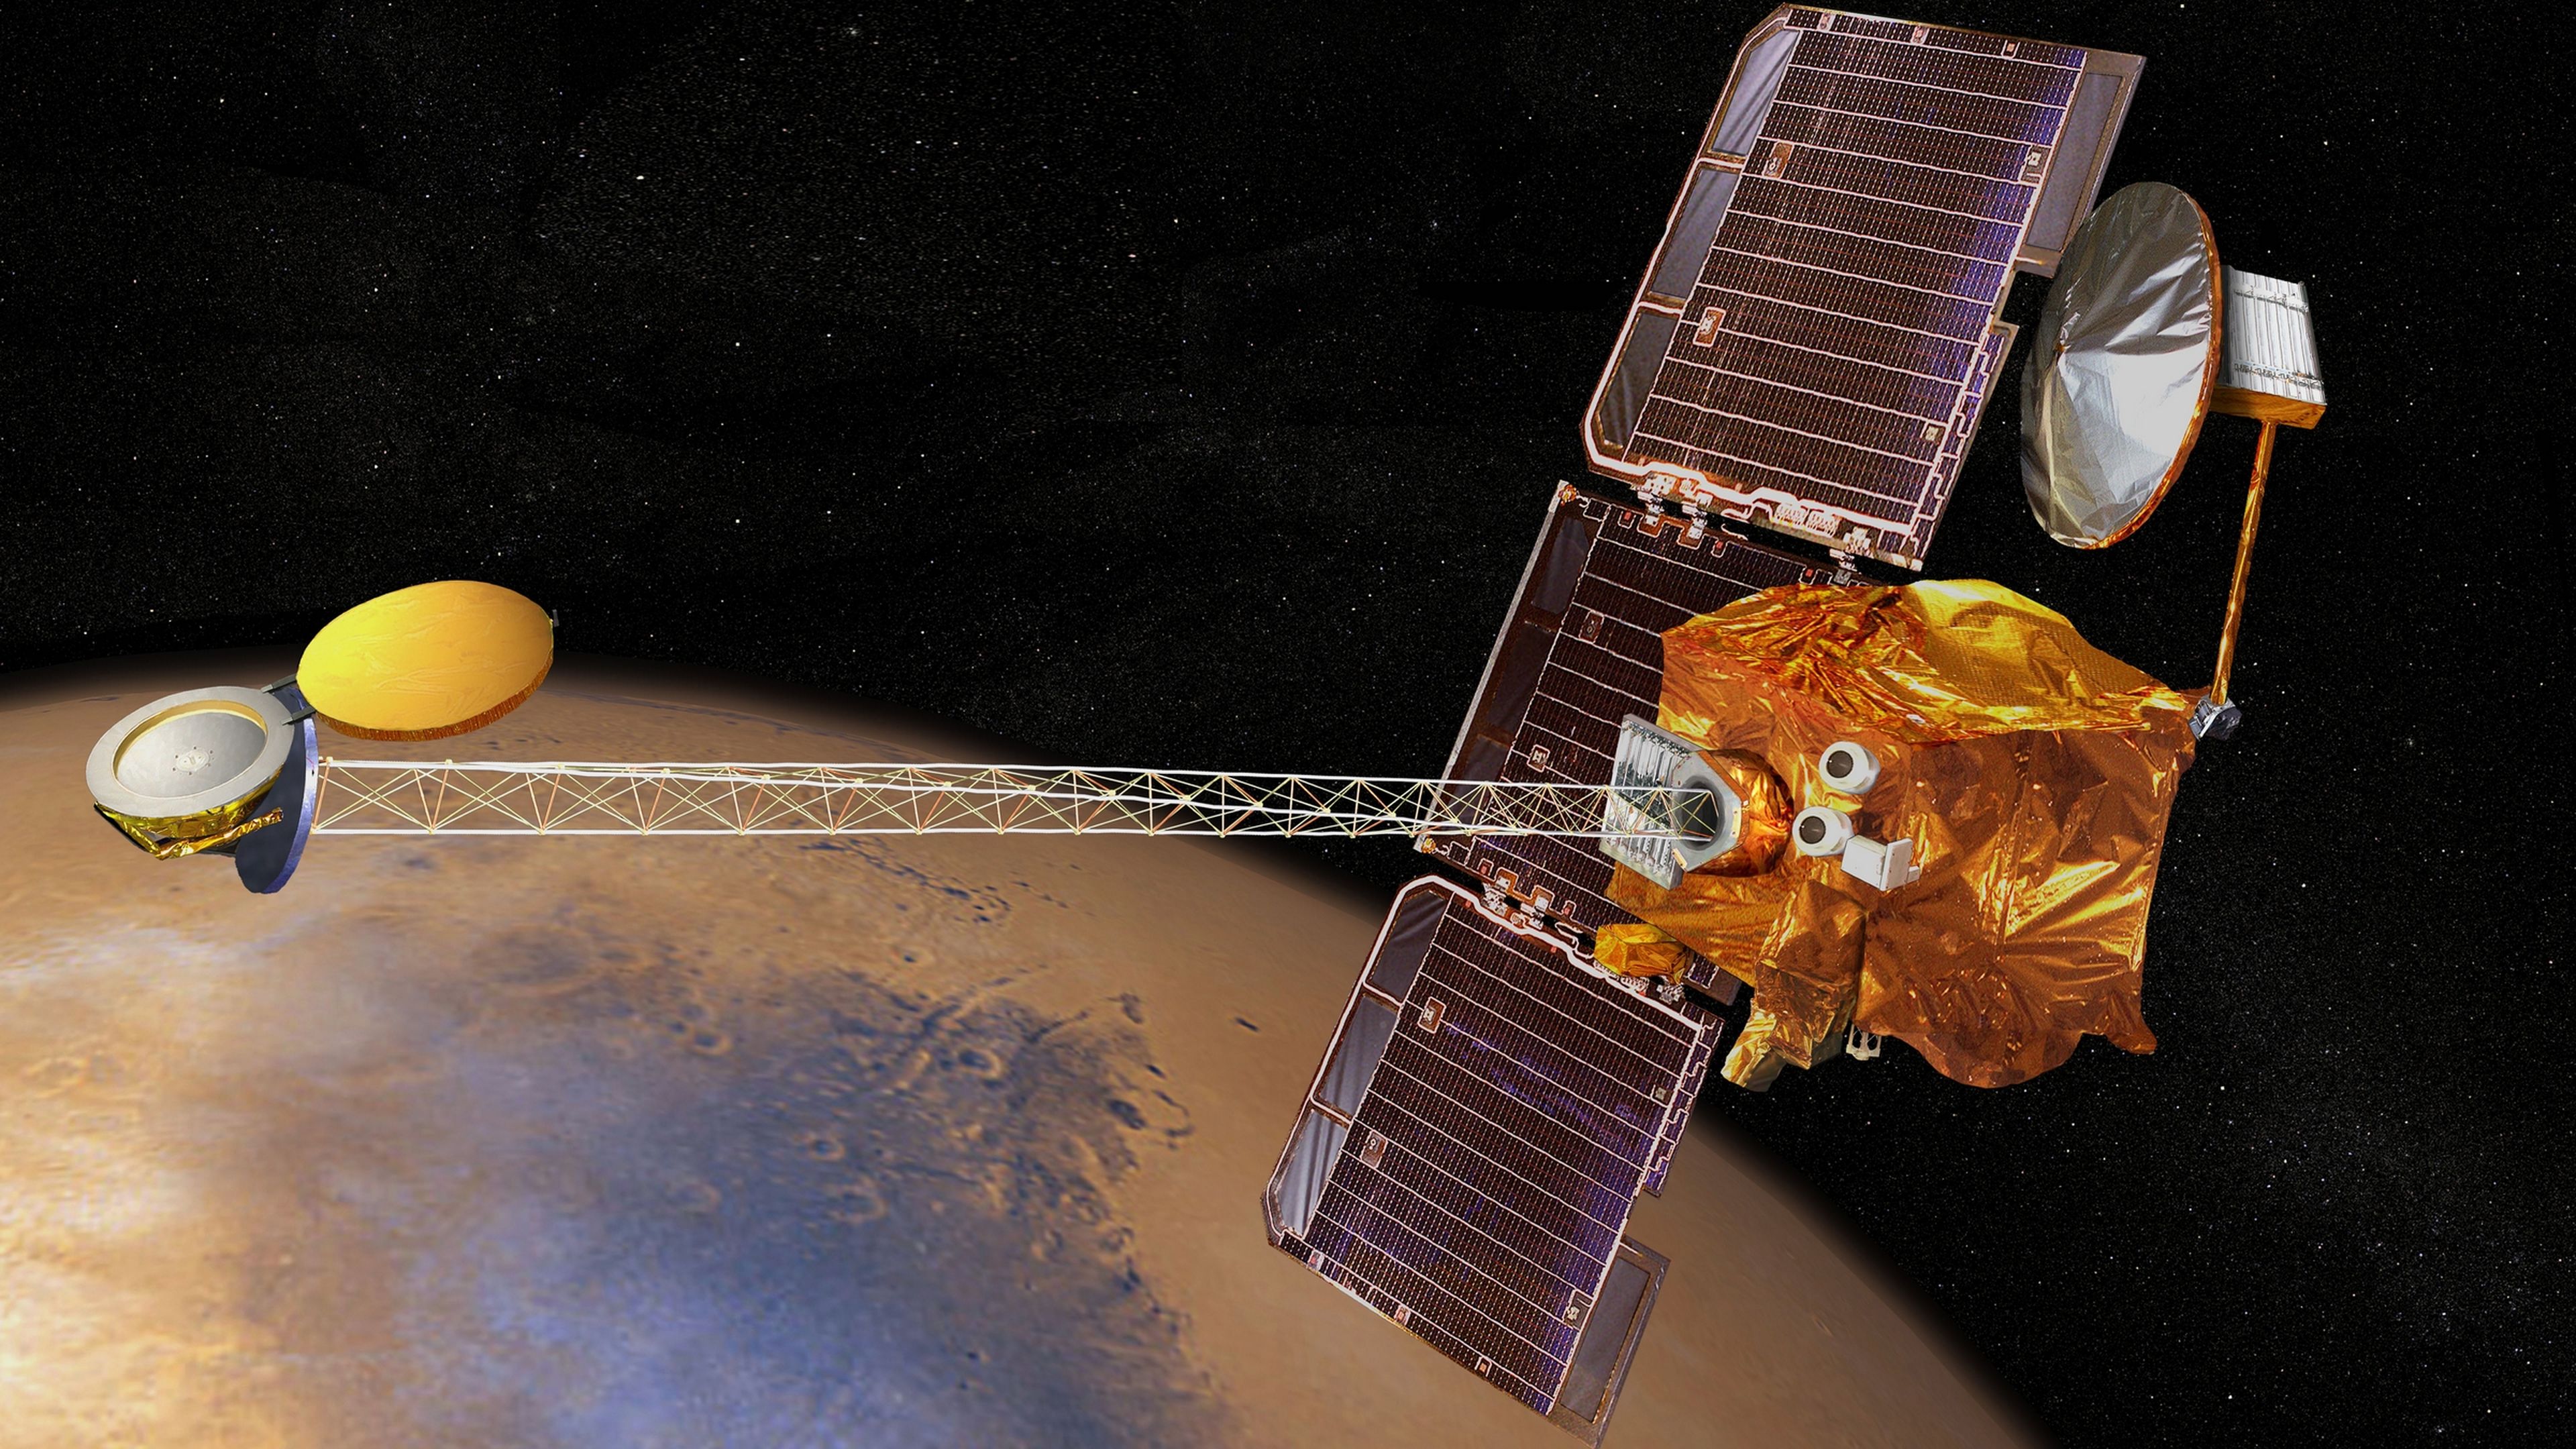 Mars Odyssey completa 100.000 vueltas a Marte, lo celebra con una foto especial